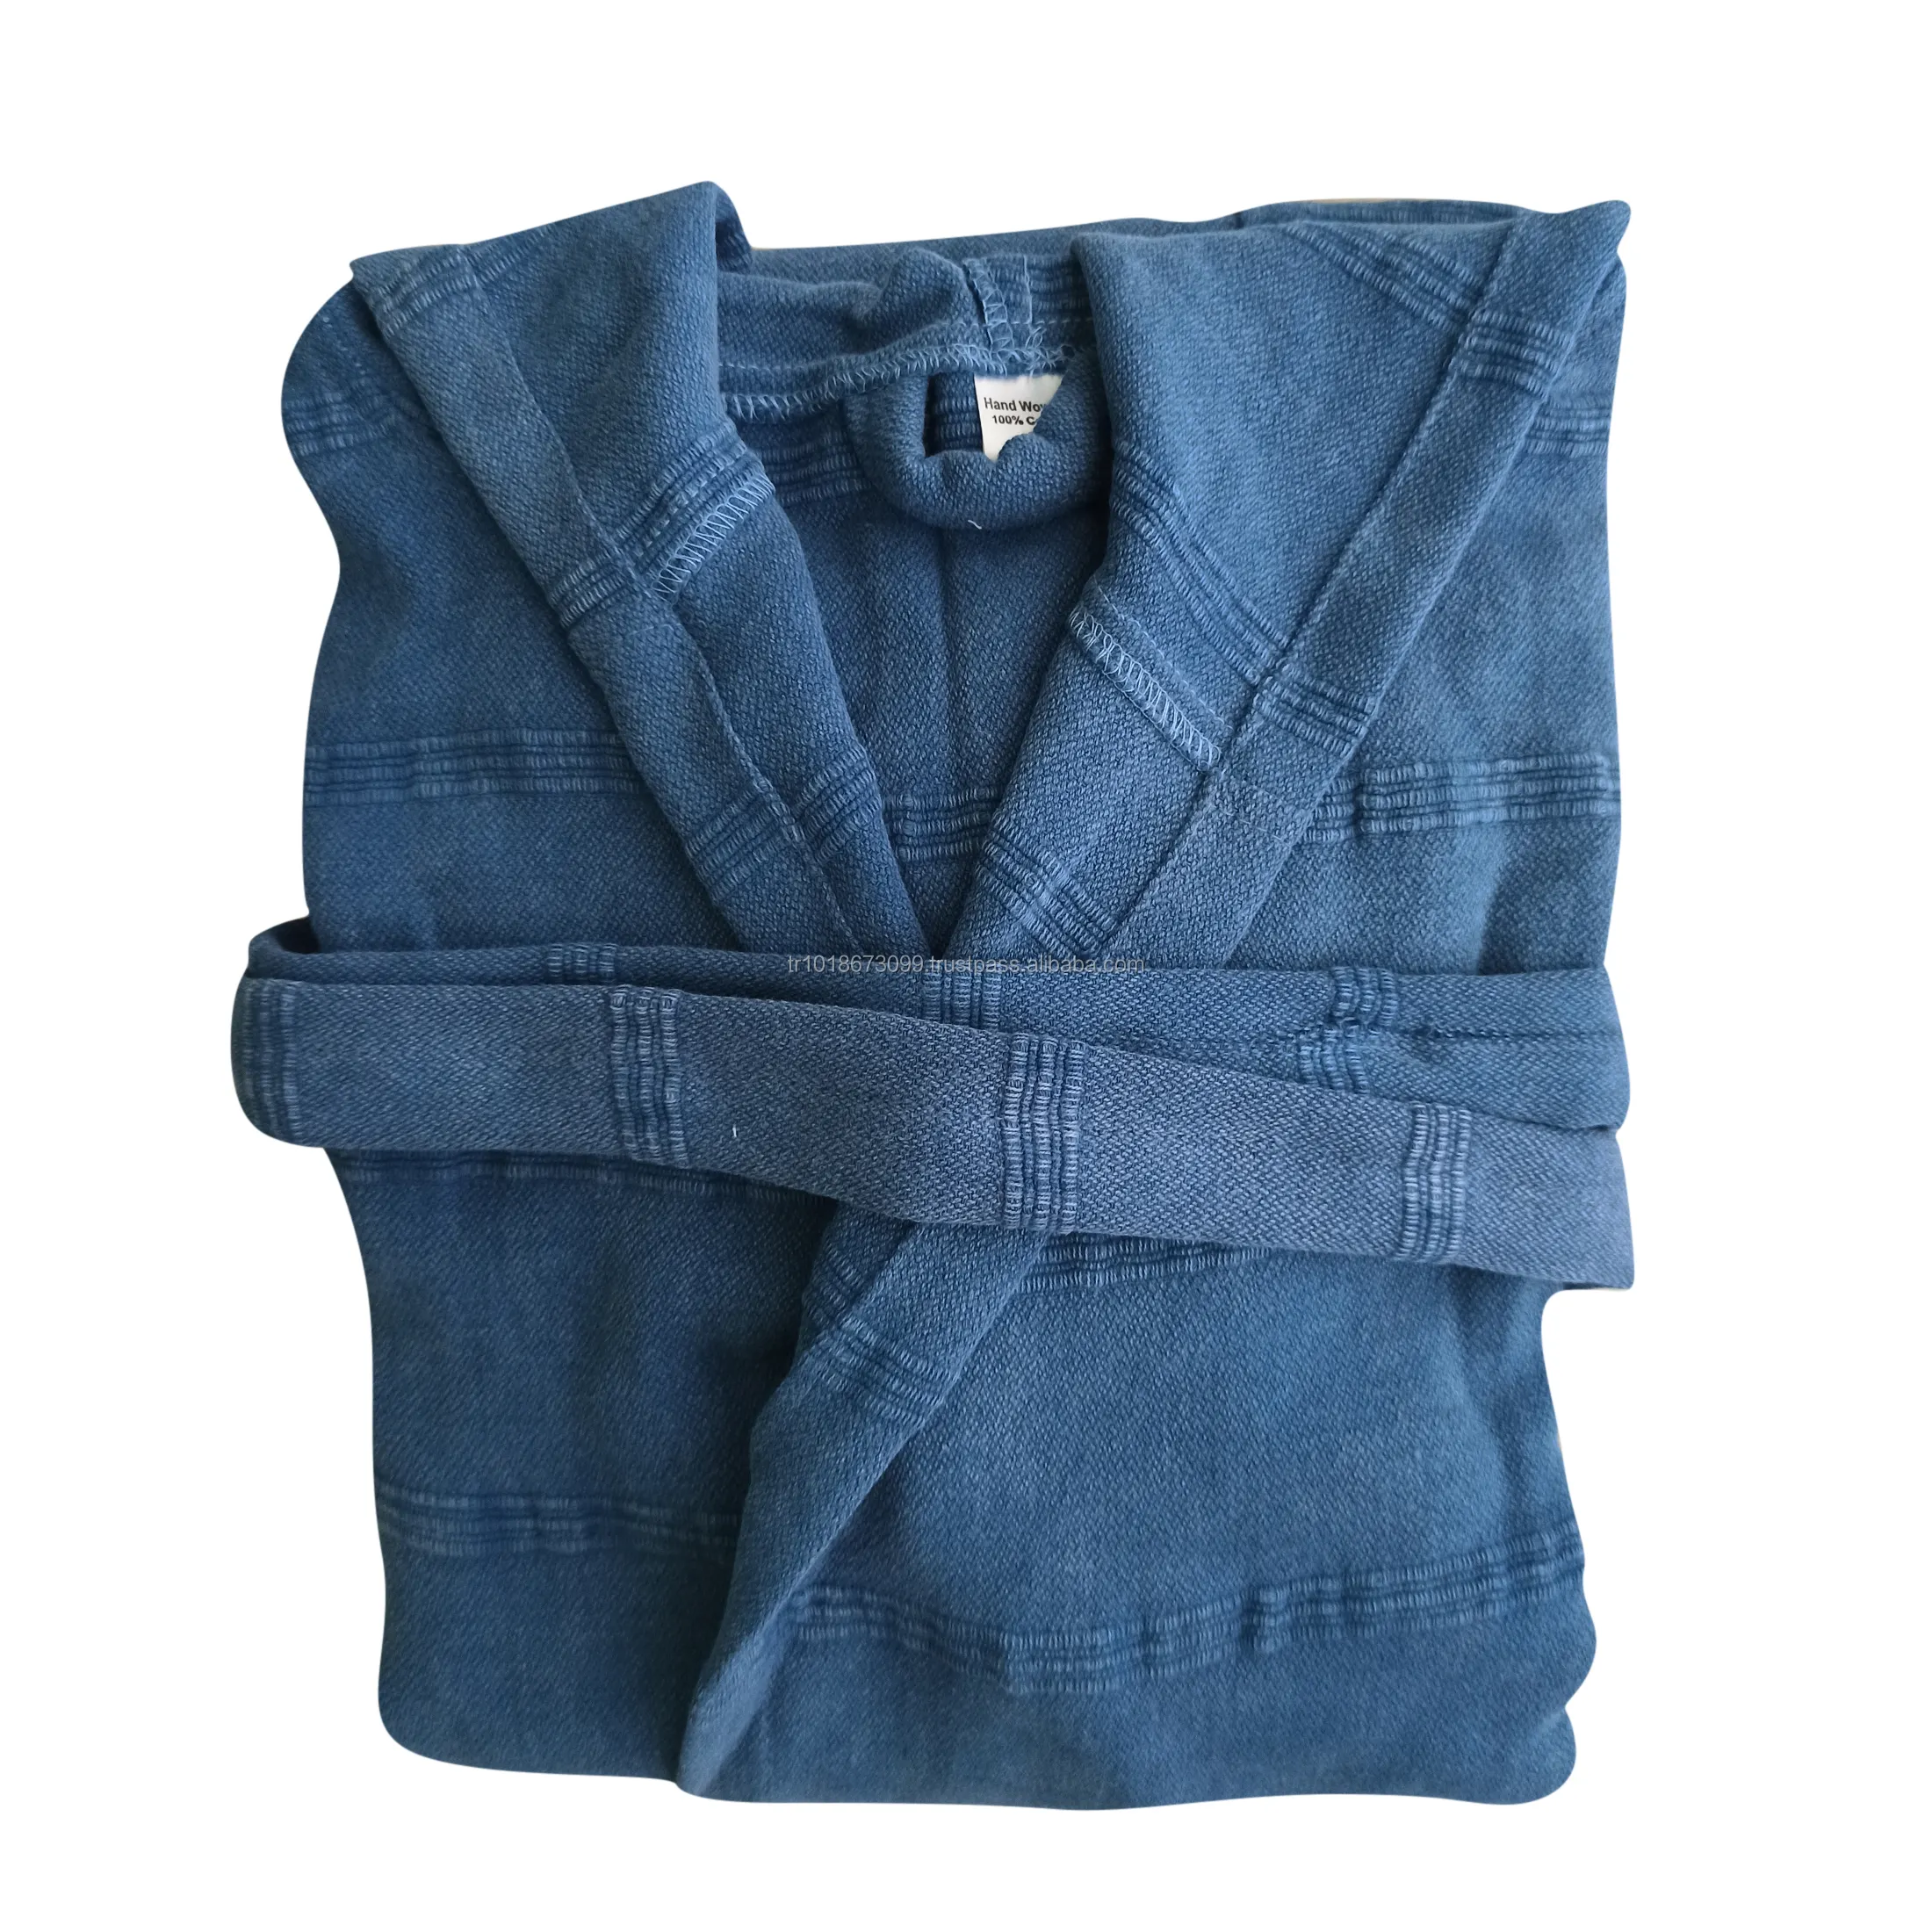 Stonewash เสื้อคลุมสำหรับผู้หญิงและผู้ชาย,เสื้อคลุมอาบน้ำผ้าฝ้ายผลิตจากตุรกีผ้าระบายอากาศน้ำหนักเบาขายดีที่สุดเสื้อคลุมตุรกี